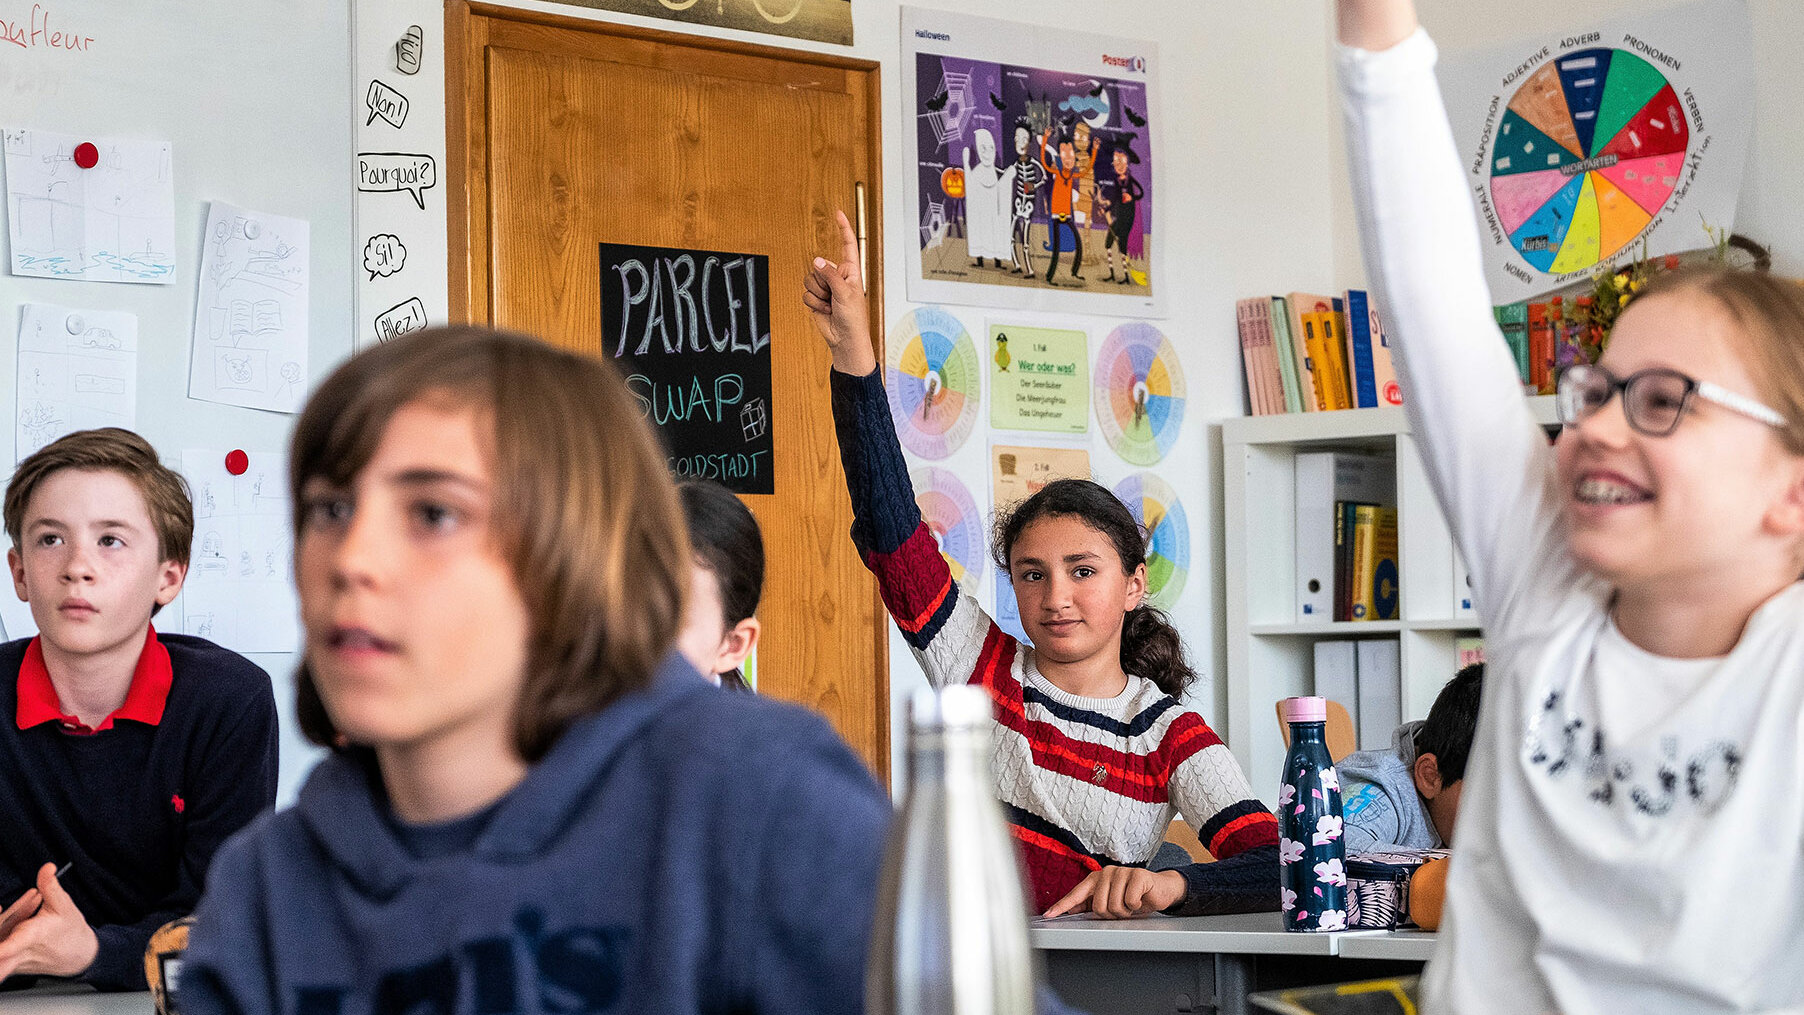 Primarschulkinder sitzen im Unterricht und zwei Mädchen strecken die Hände hoch.	